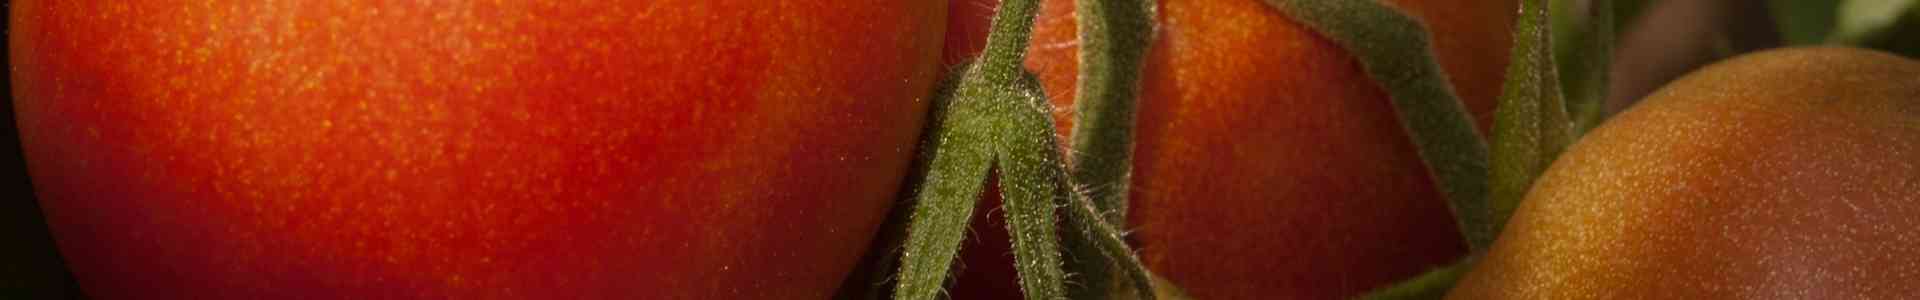 Voordelen van zelf tomaten kweken​